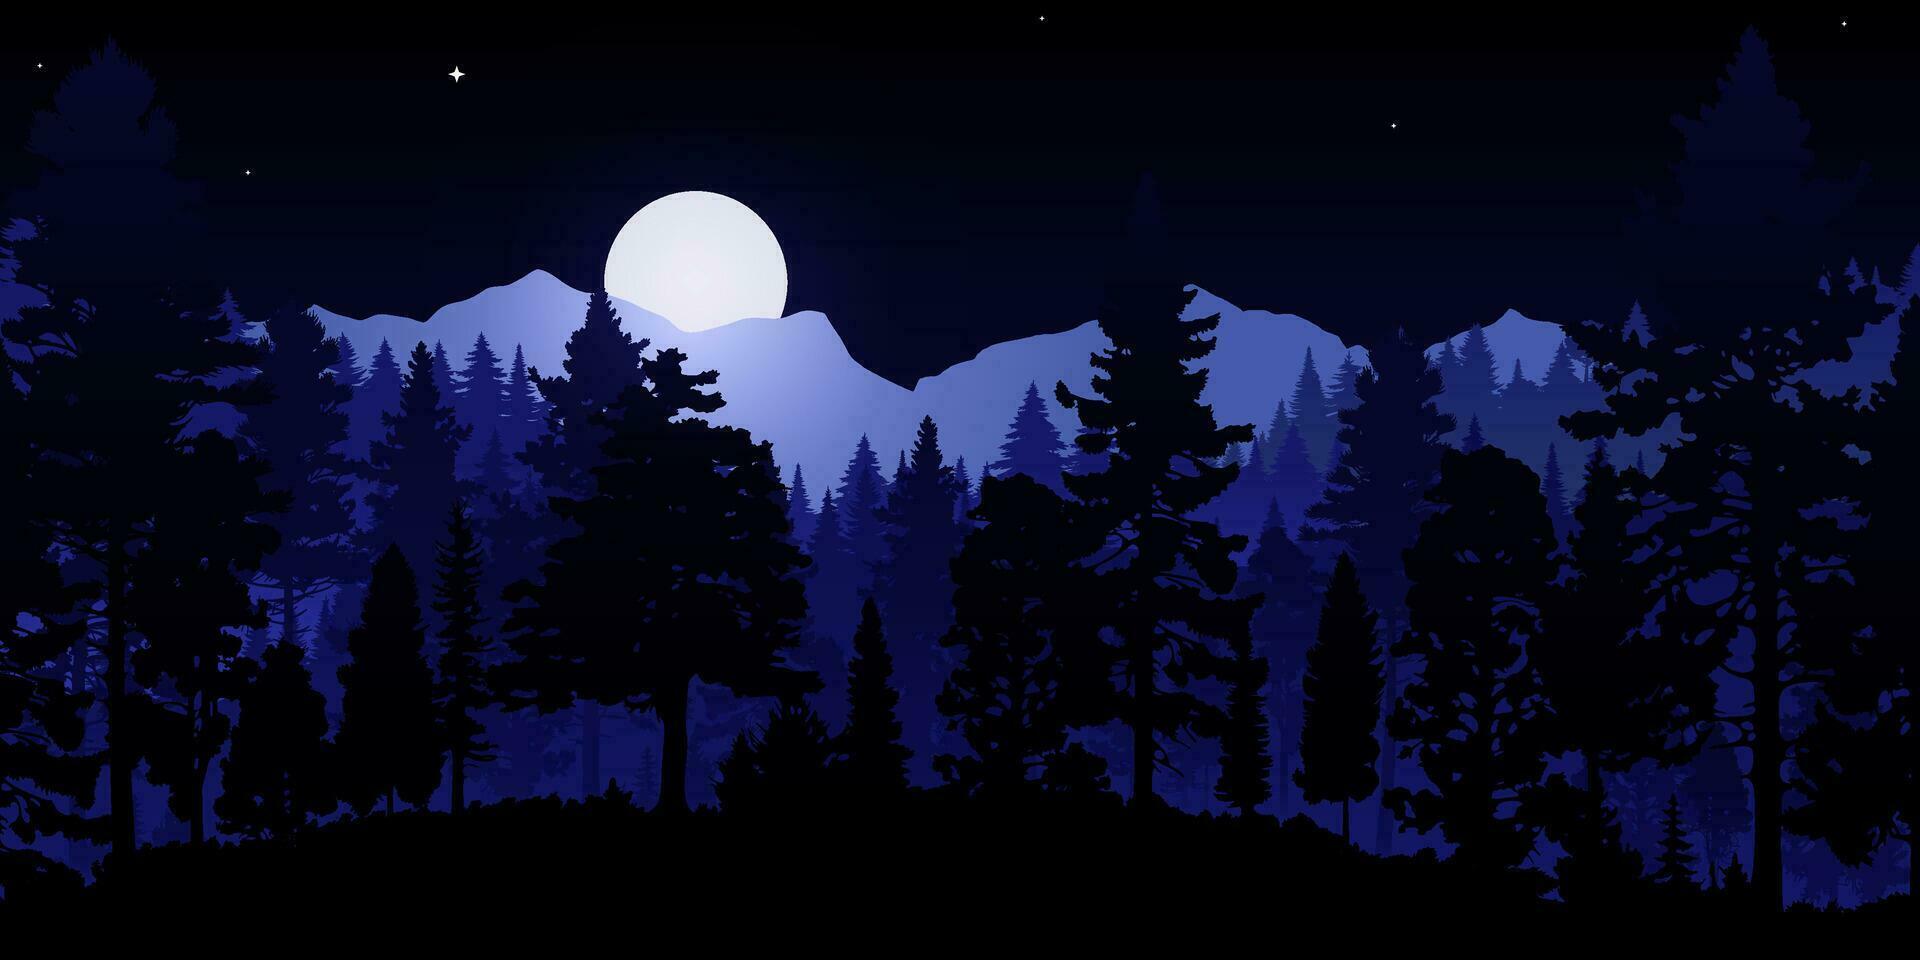 vektor illustration av en skön natt skog landskap med silhouetted träd, mörk himmel, stjärnor och en lysande måne. perfekt för tapeter och mönster.